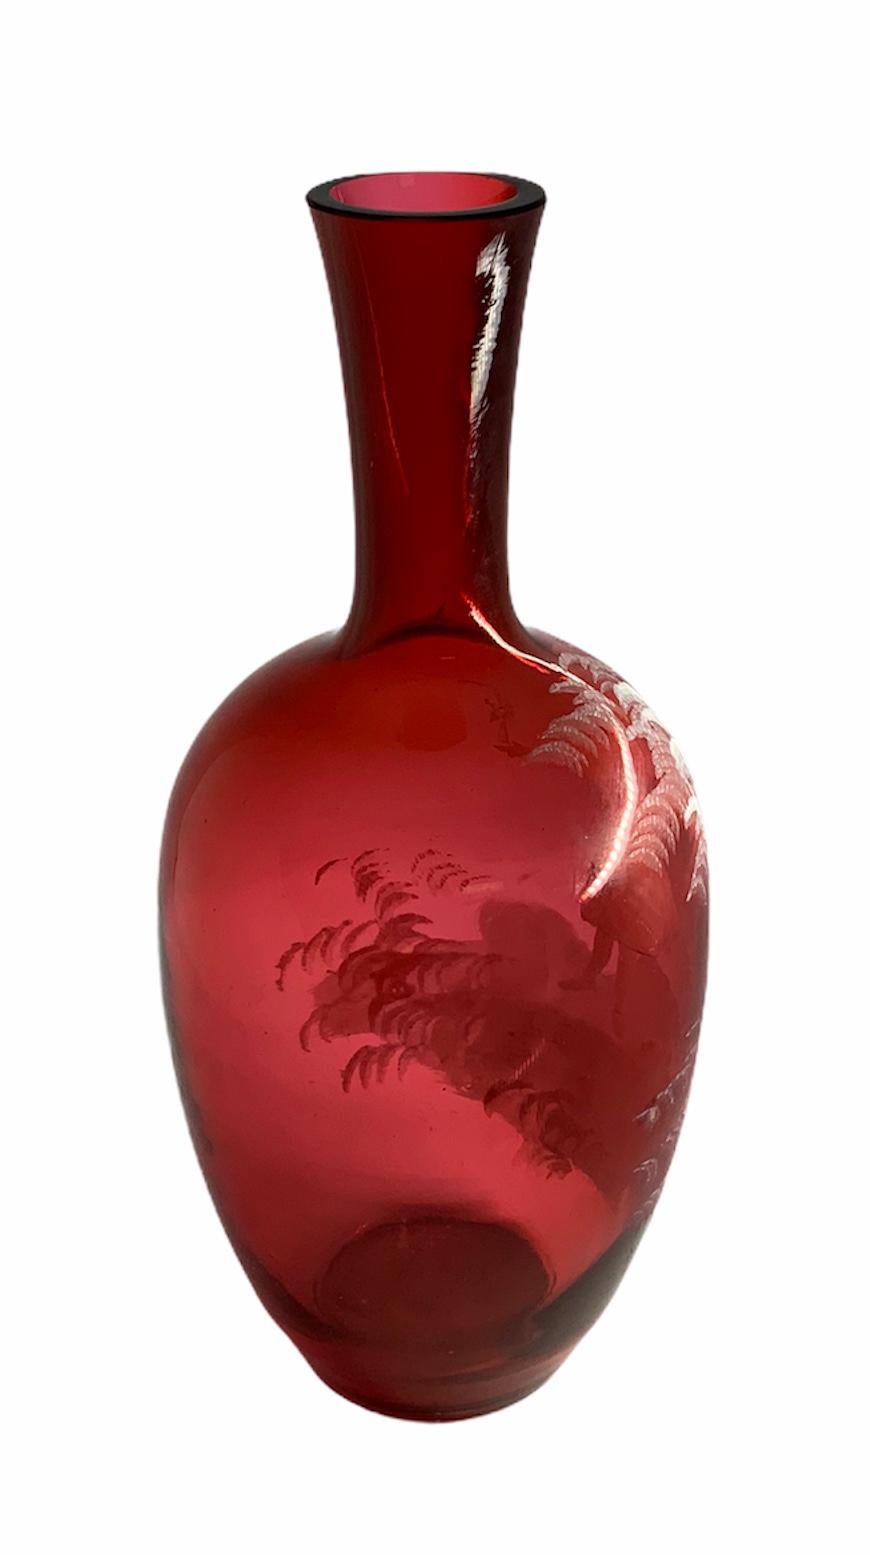 Dies ist ein rotes Glas von Mary Gregory, das eine weiße Emailmalerei eines Mädchens zeigt, das im Wald Stöcke und Äste sammelt.